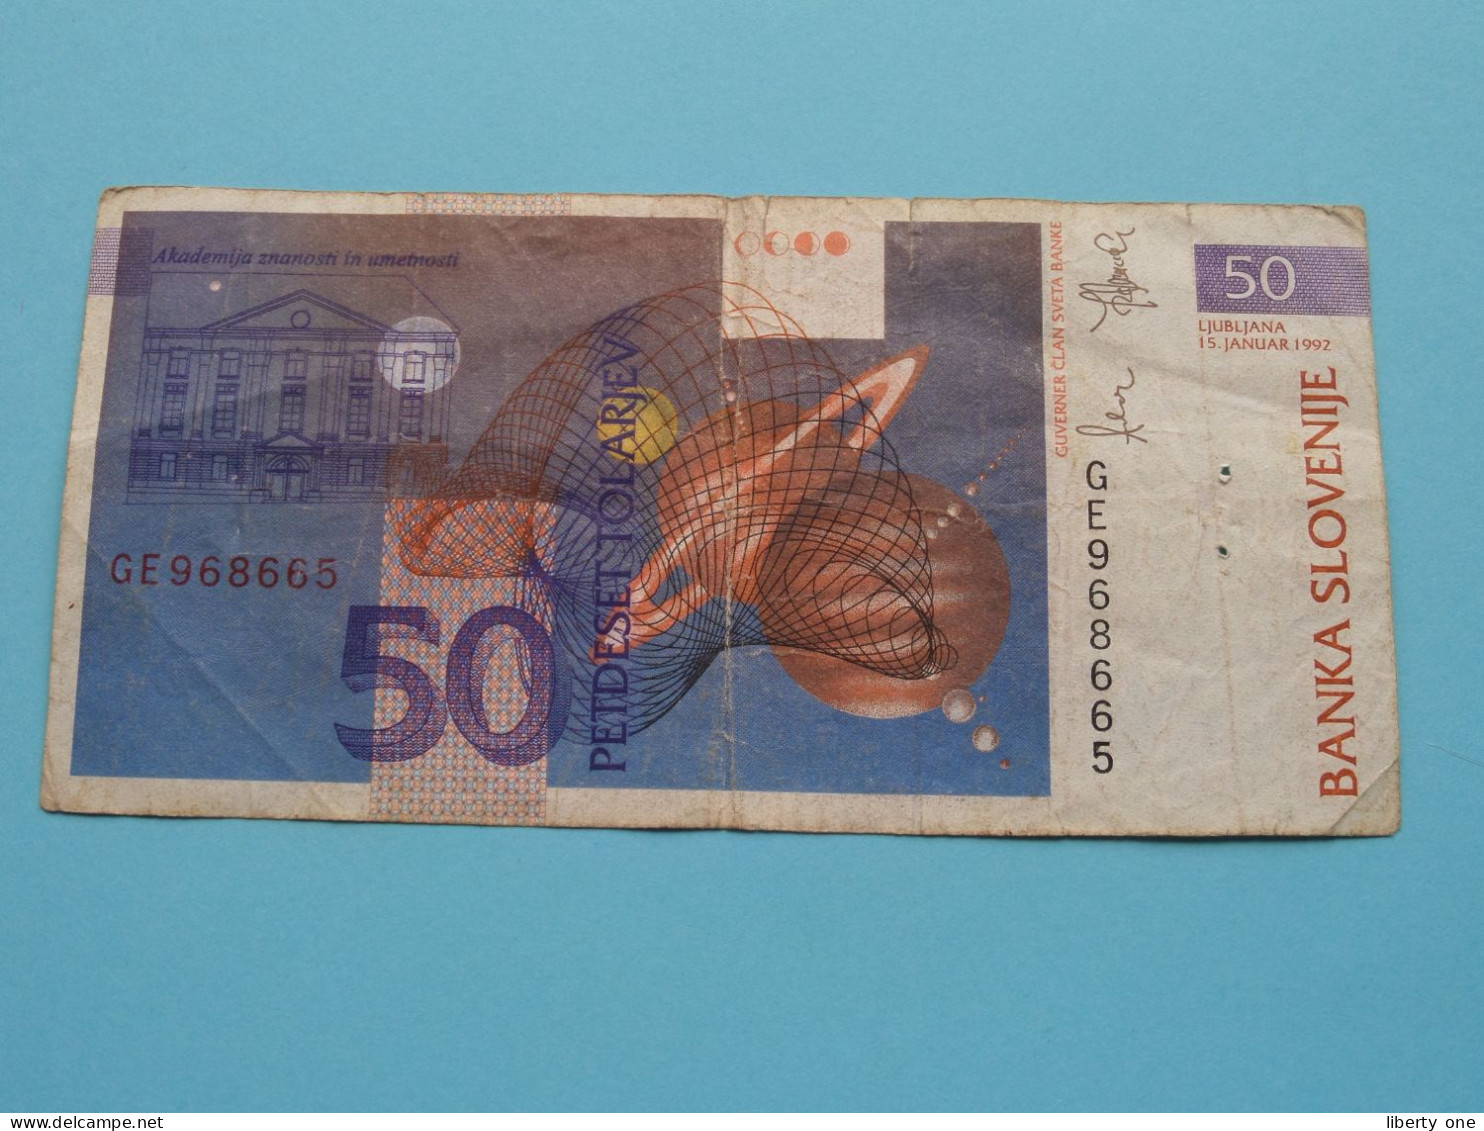 50 Tolarjev ( GE968665 ) Banka Slovenije - 1992( For Grade See SCAN ) Circulated ! - Eslovenia